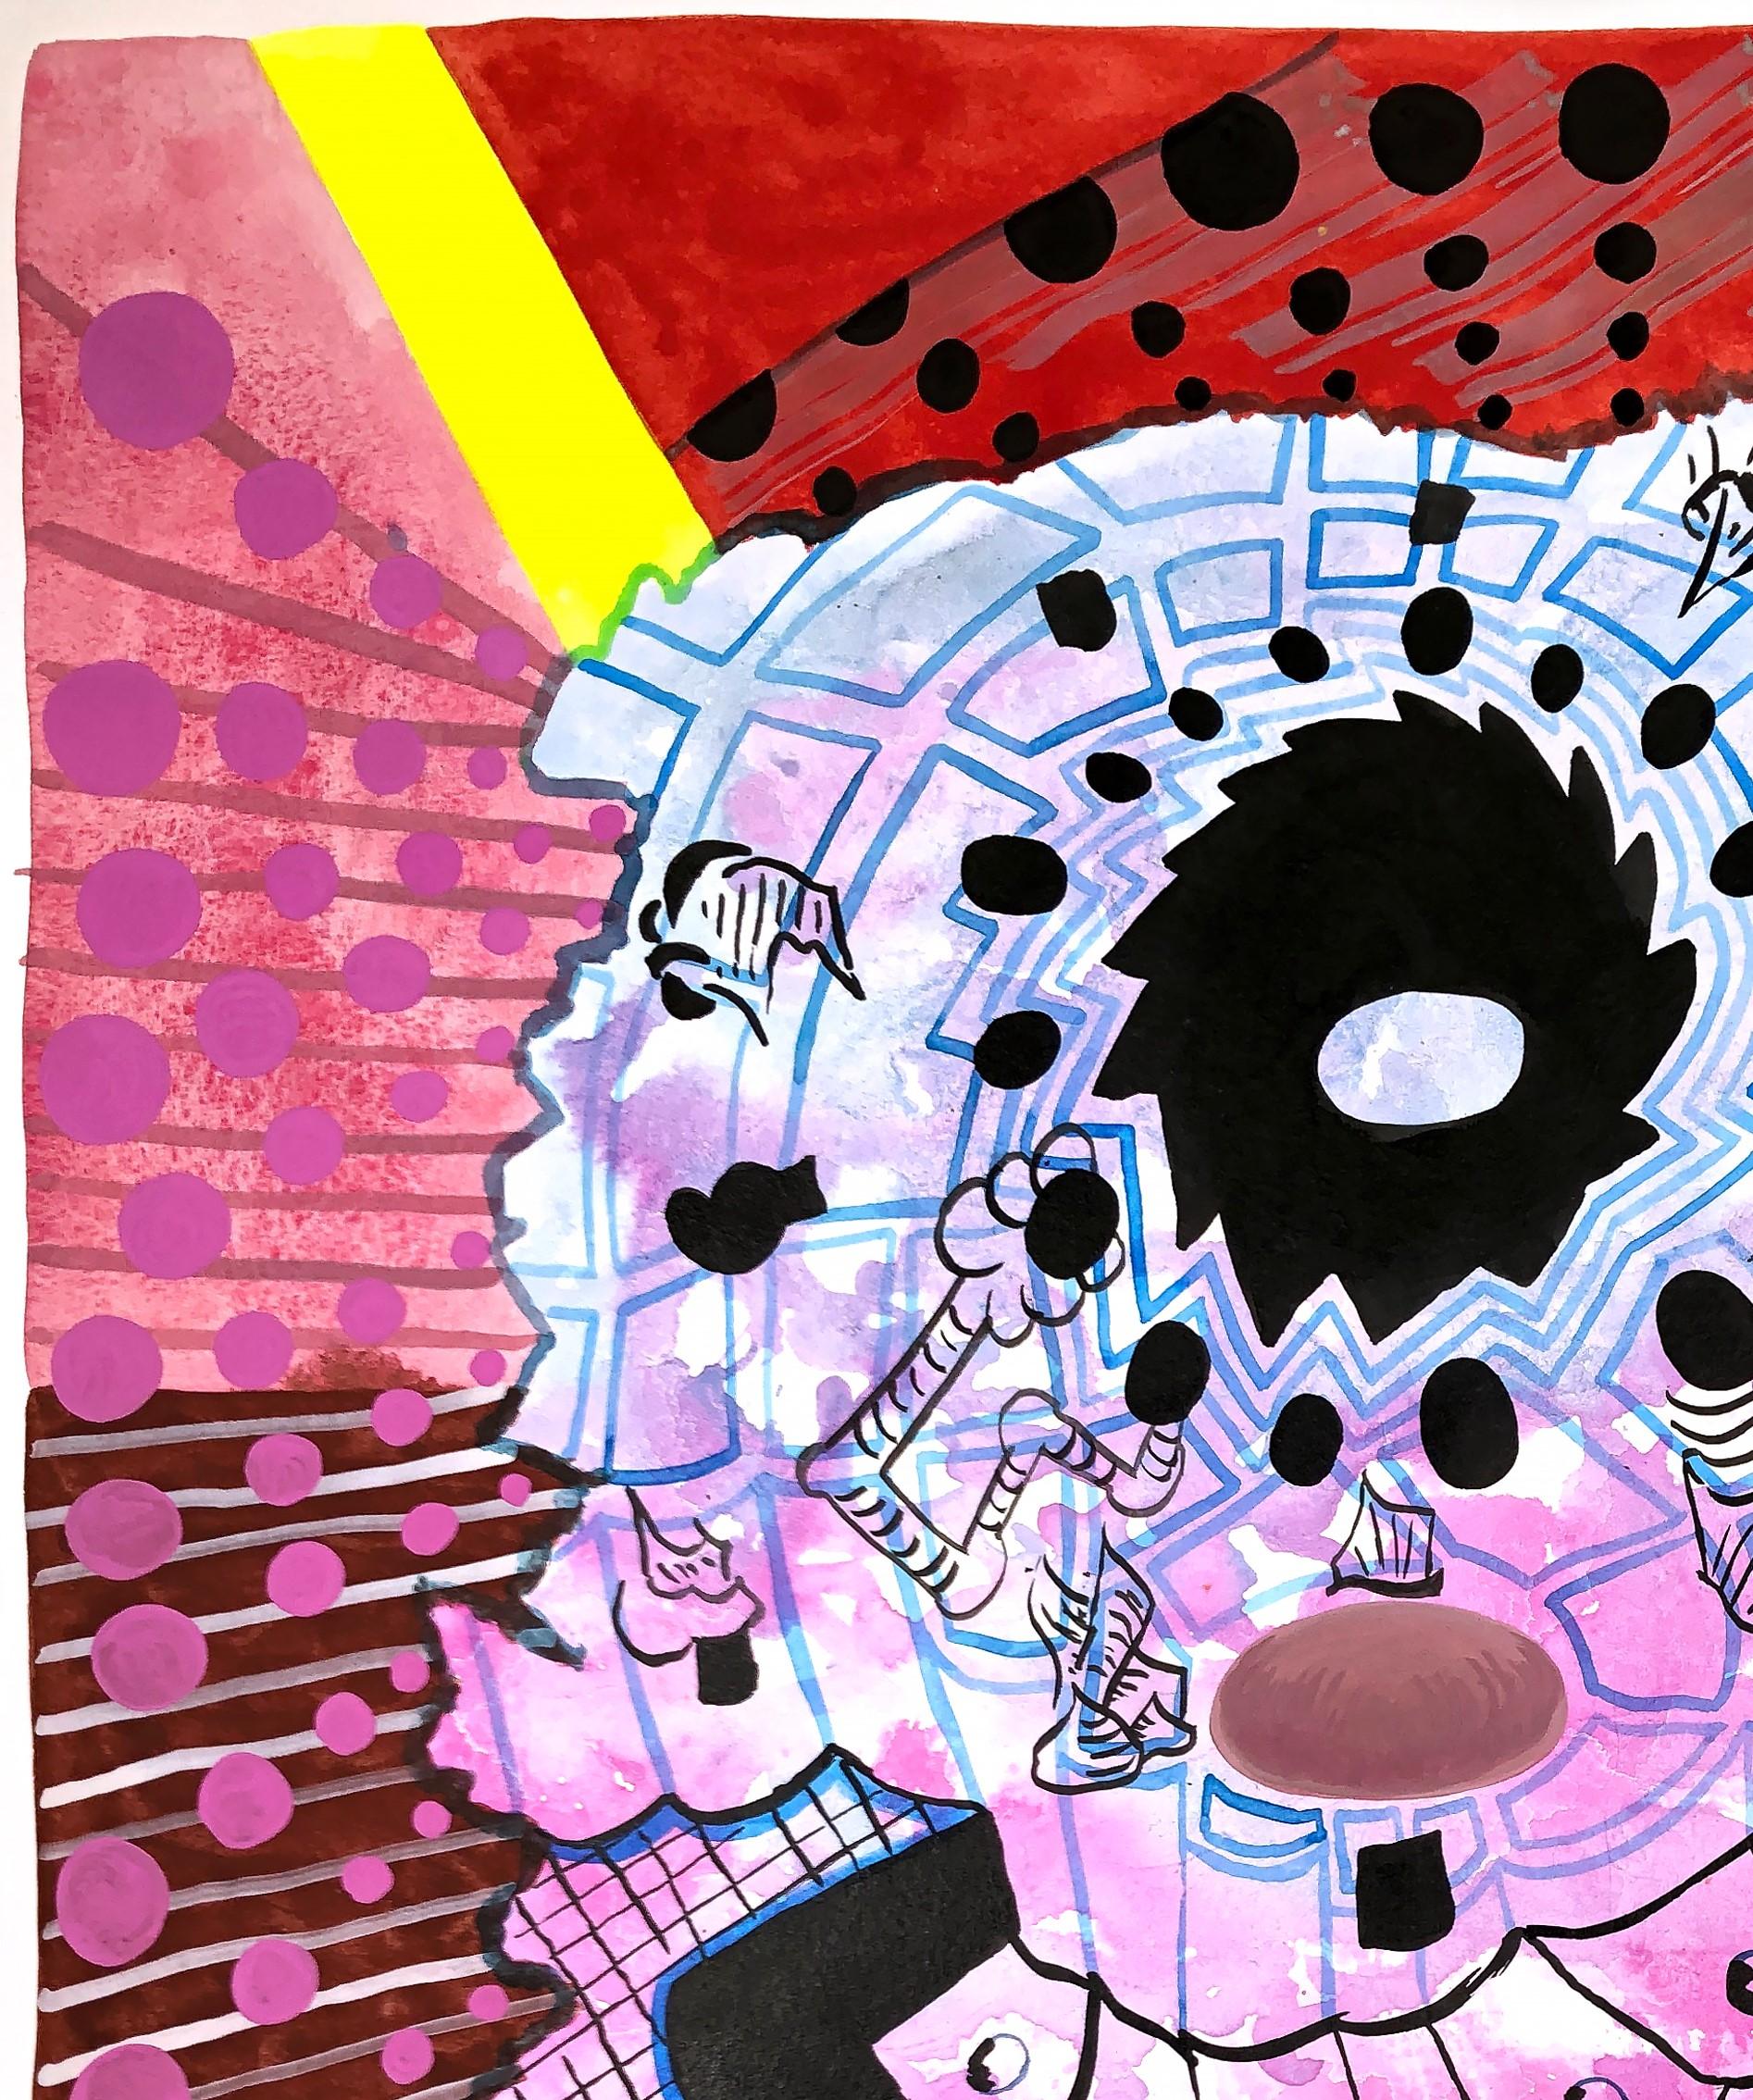 Zeitgenössisches abstraktes geometrisches Gemälde mit bunten Mustern des in Texas lebenden Künstlers Max Manning. Das Werk weist organische und  geometrische Formen in Rot, Rosa, Blau, Gelb, Schwarz und Weiß. Signiert vom Künstler auf der Rückseite